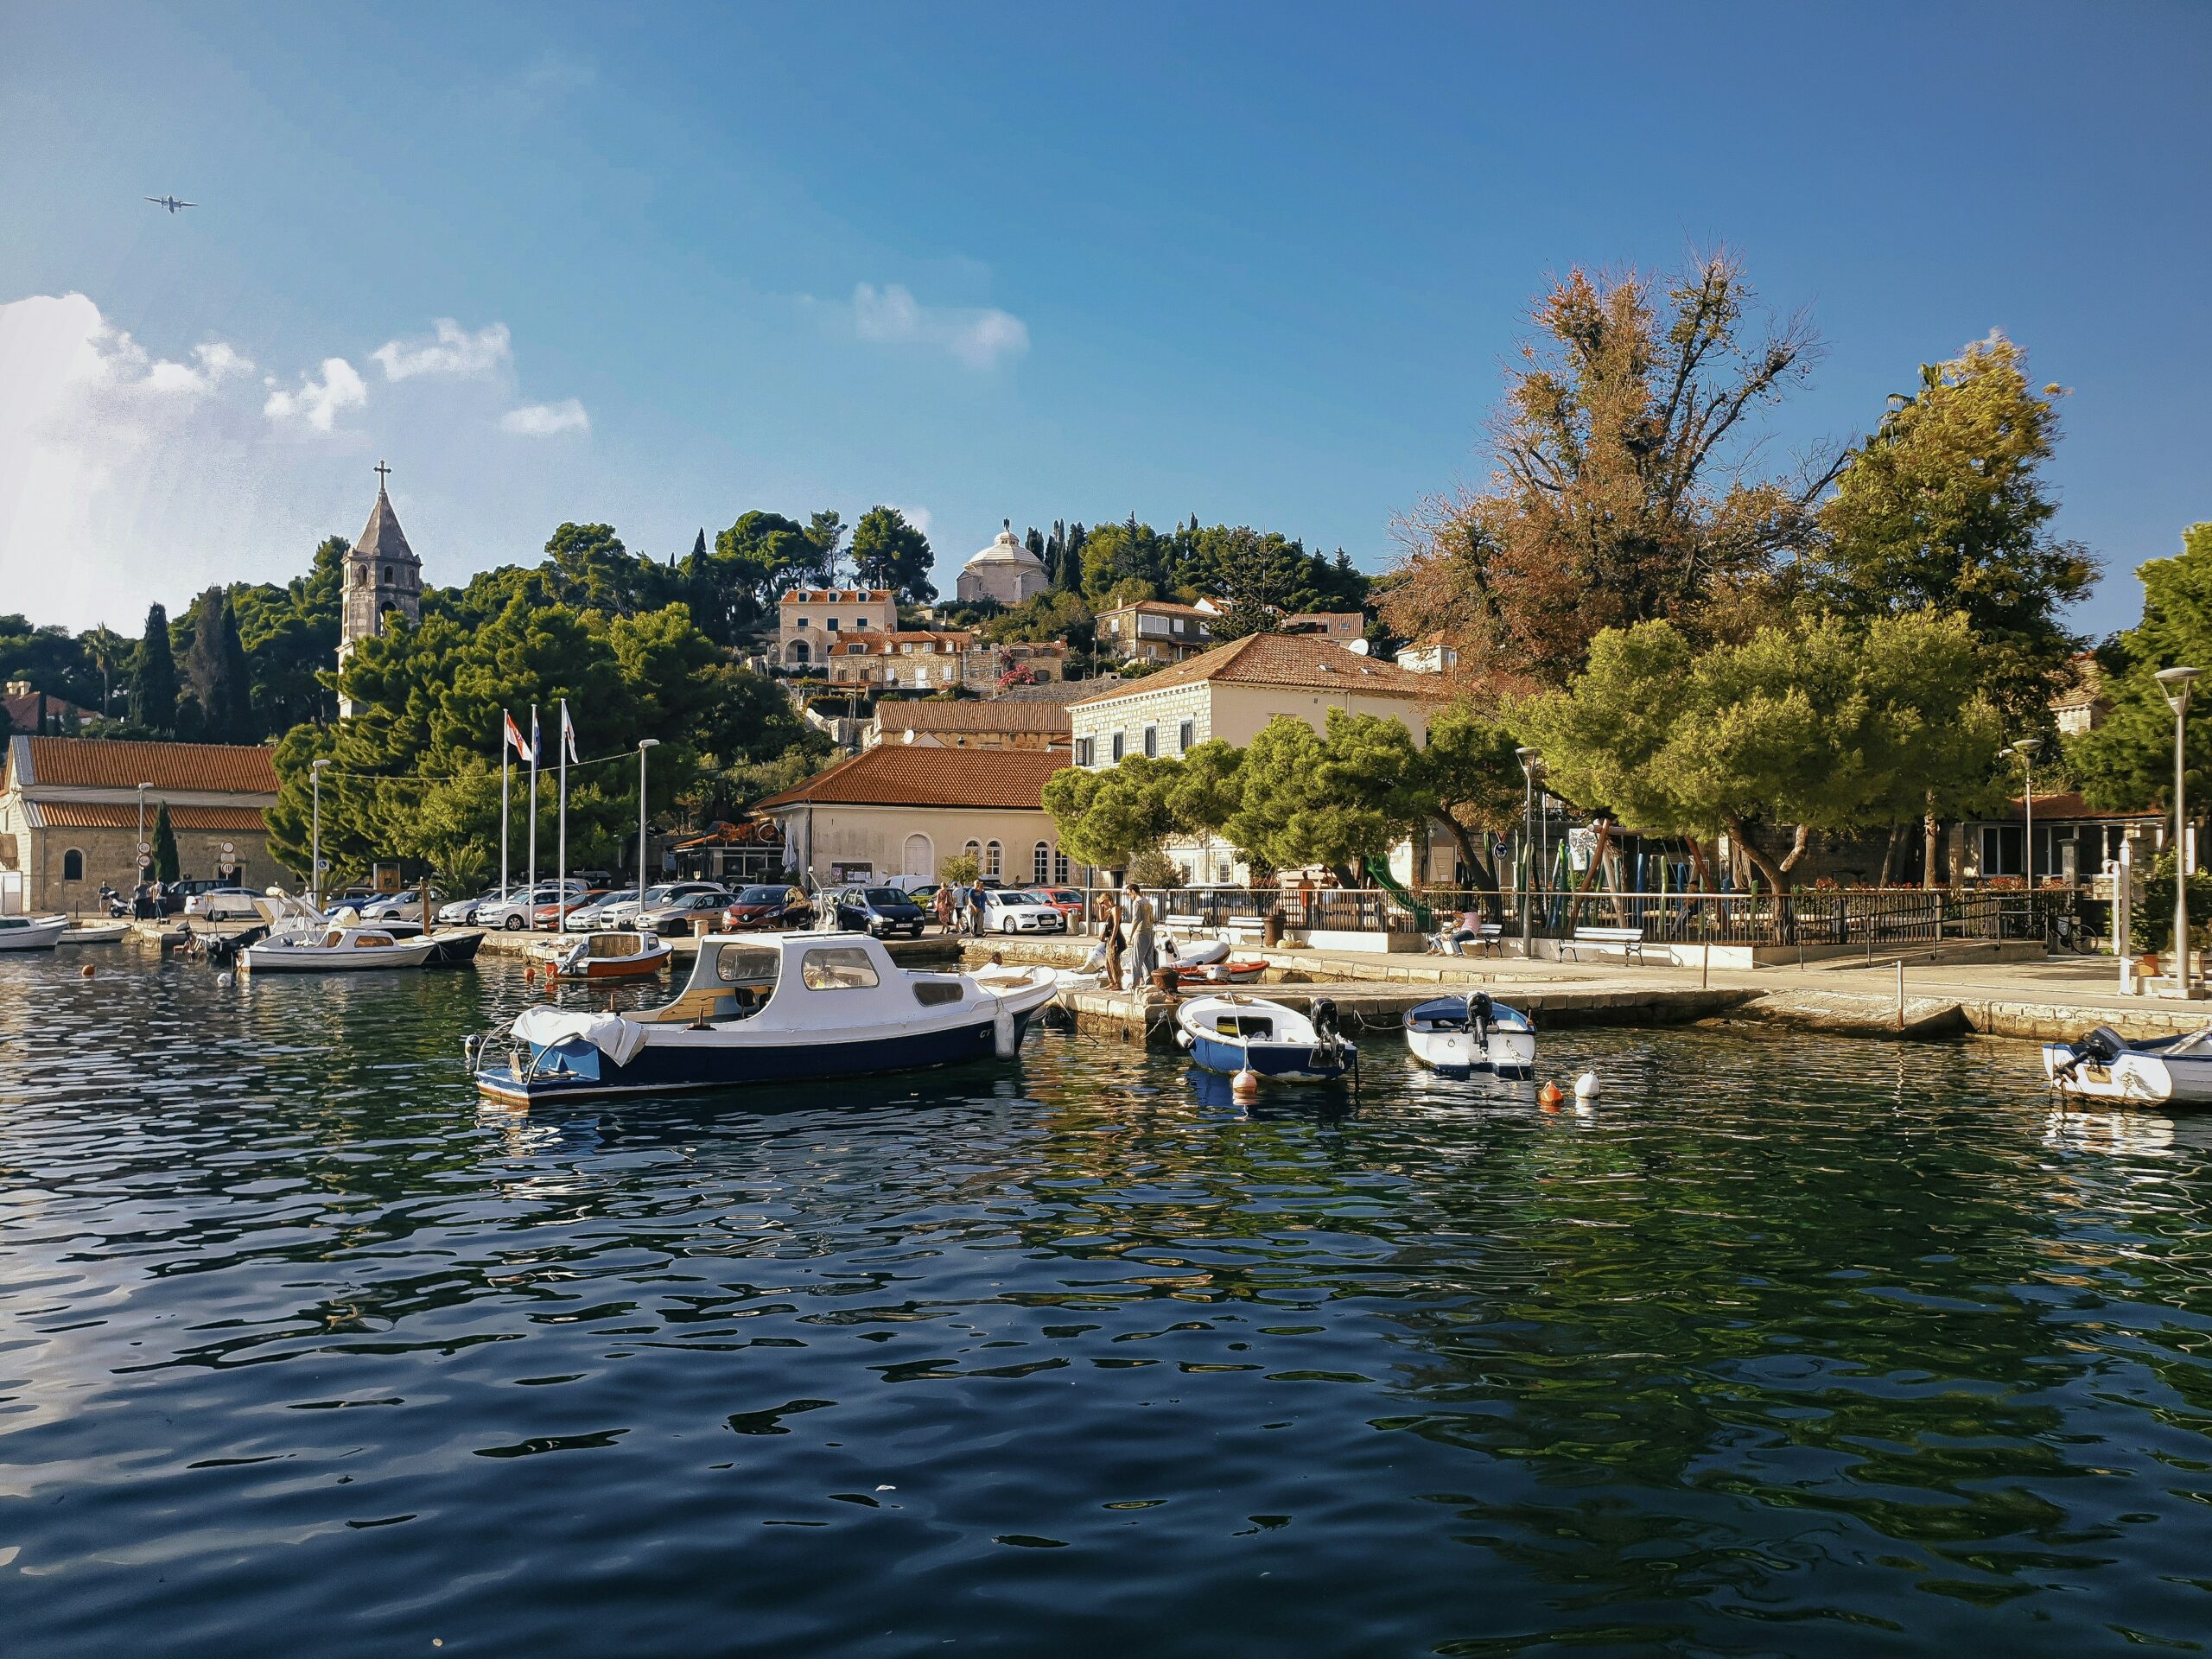 Dva hrvatska grada u top 10 najljepših u Europi